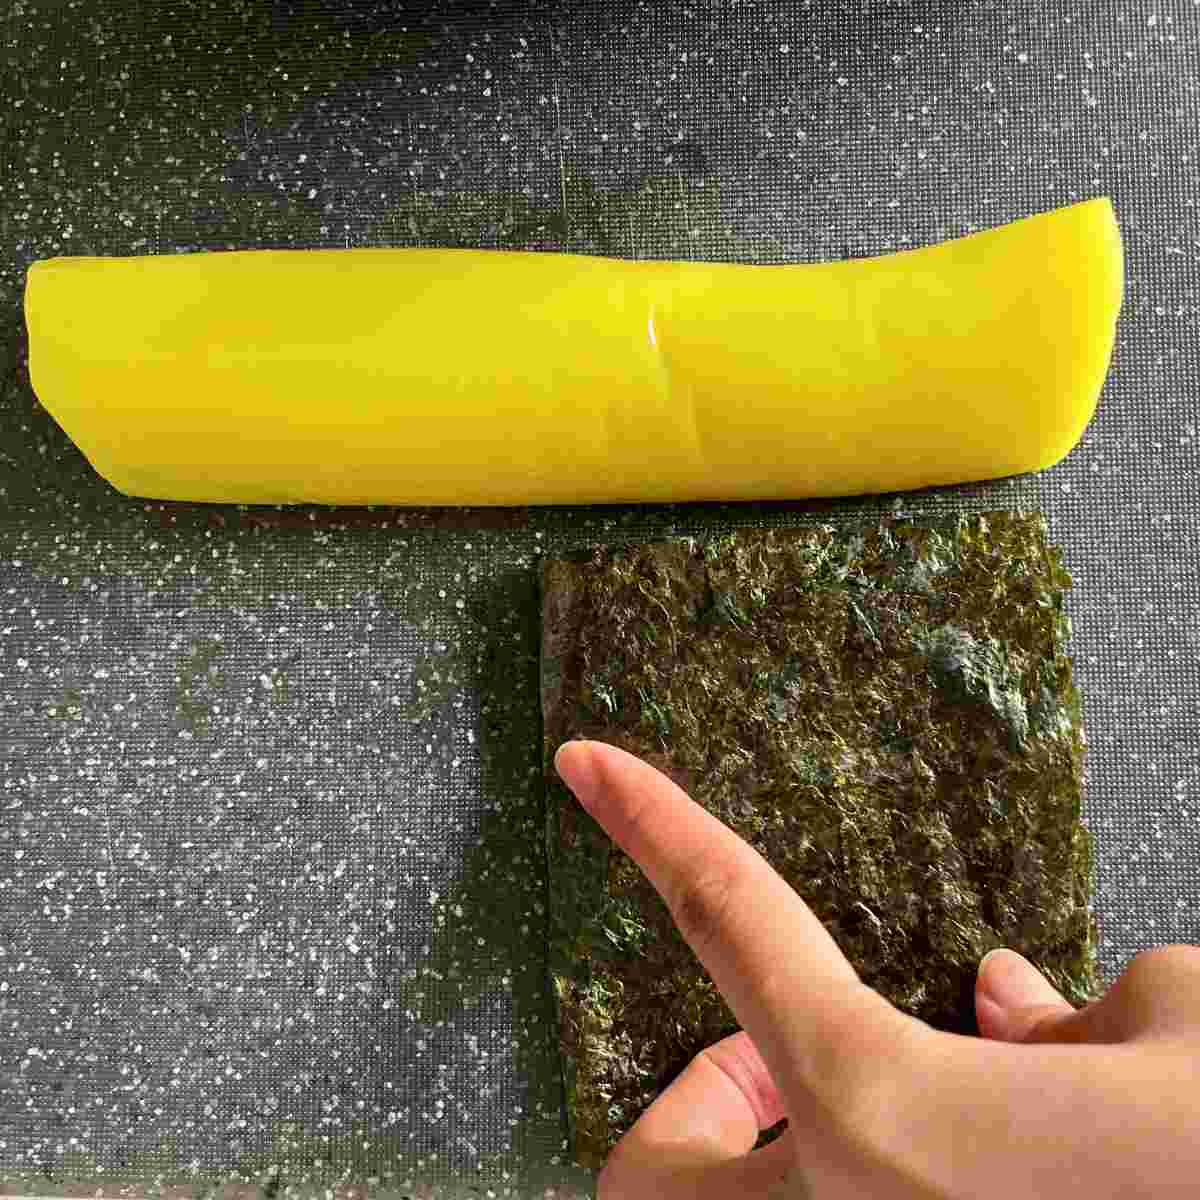 How to cut yellow daikon